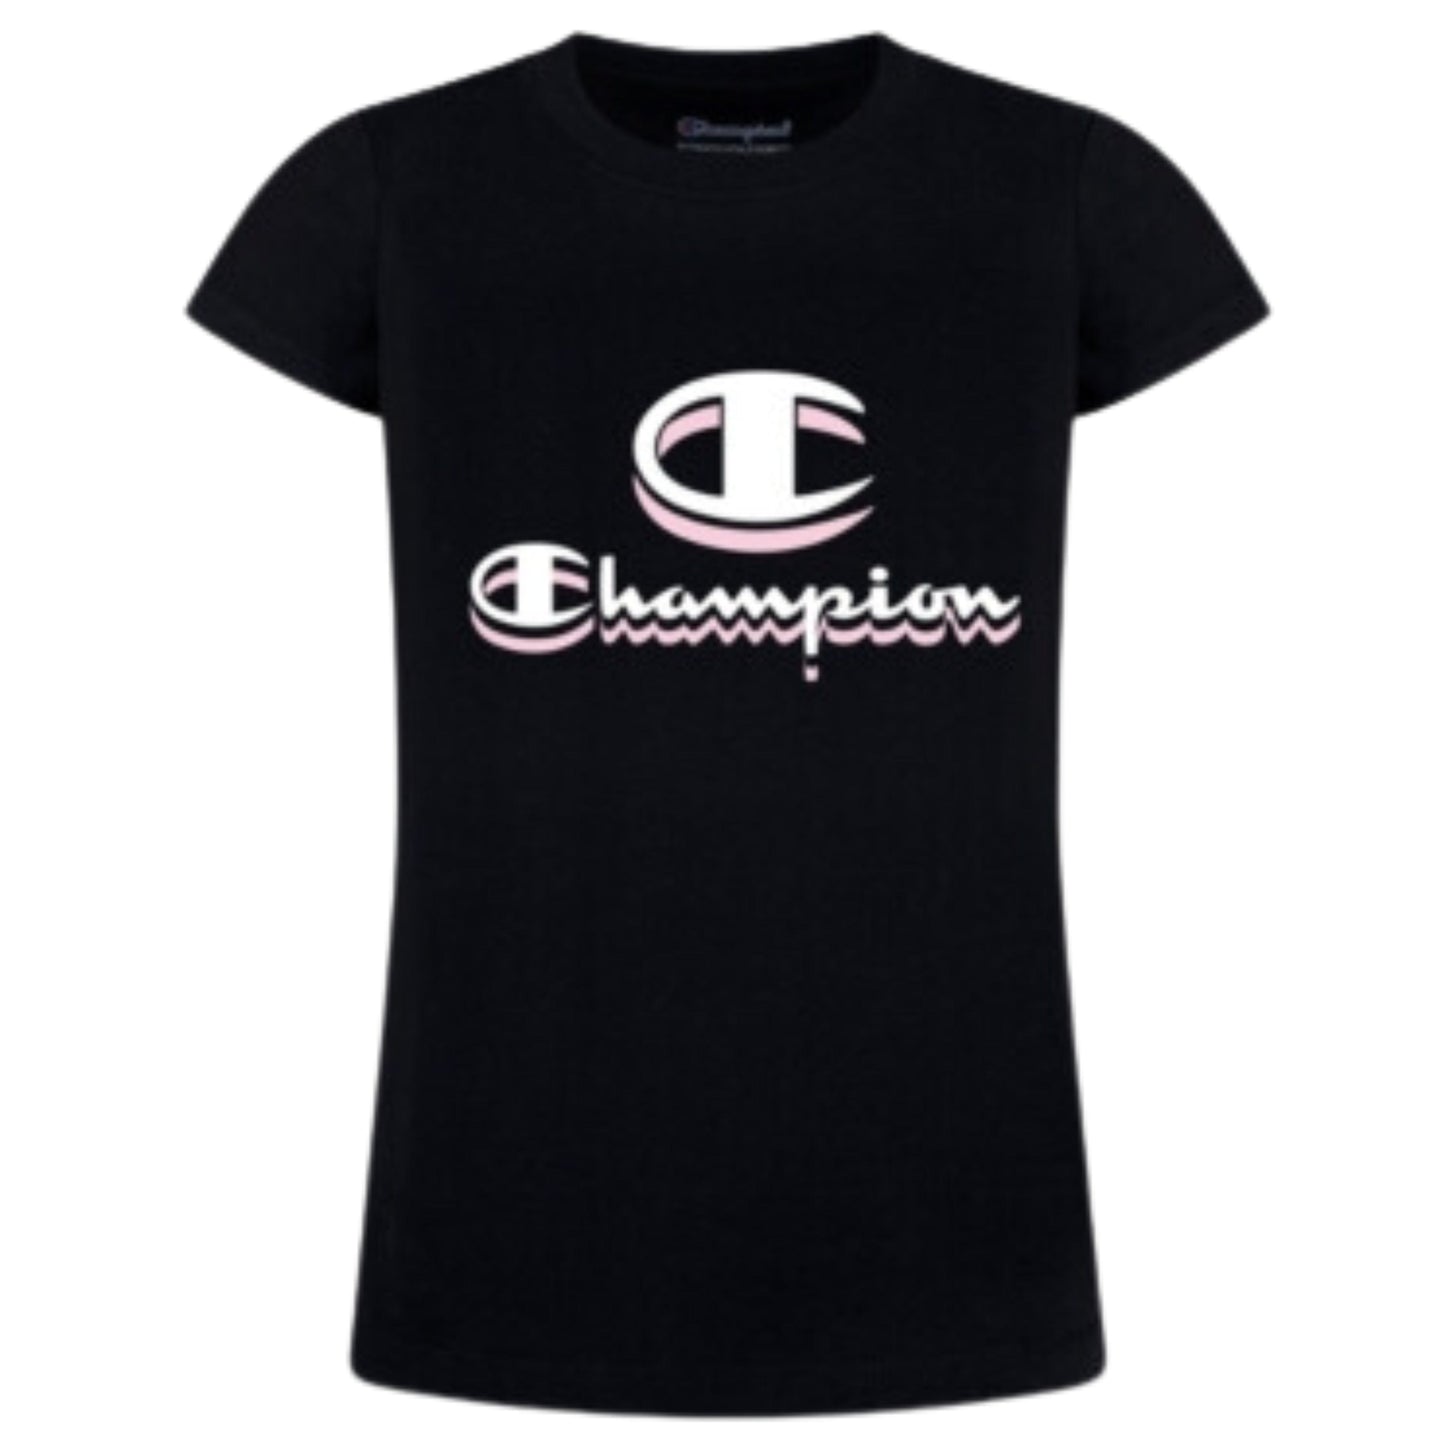 CHAMPION Girls Tops L / Black CHAMPION - KIDS - Drop Shadow T-shirt